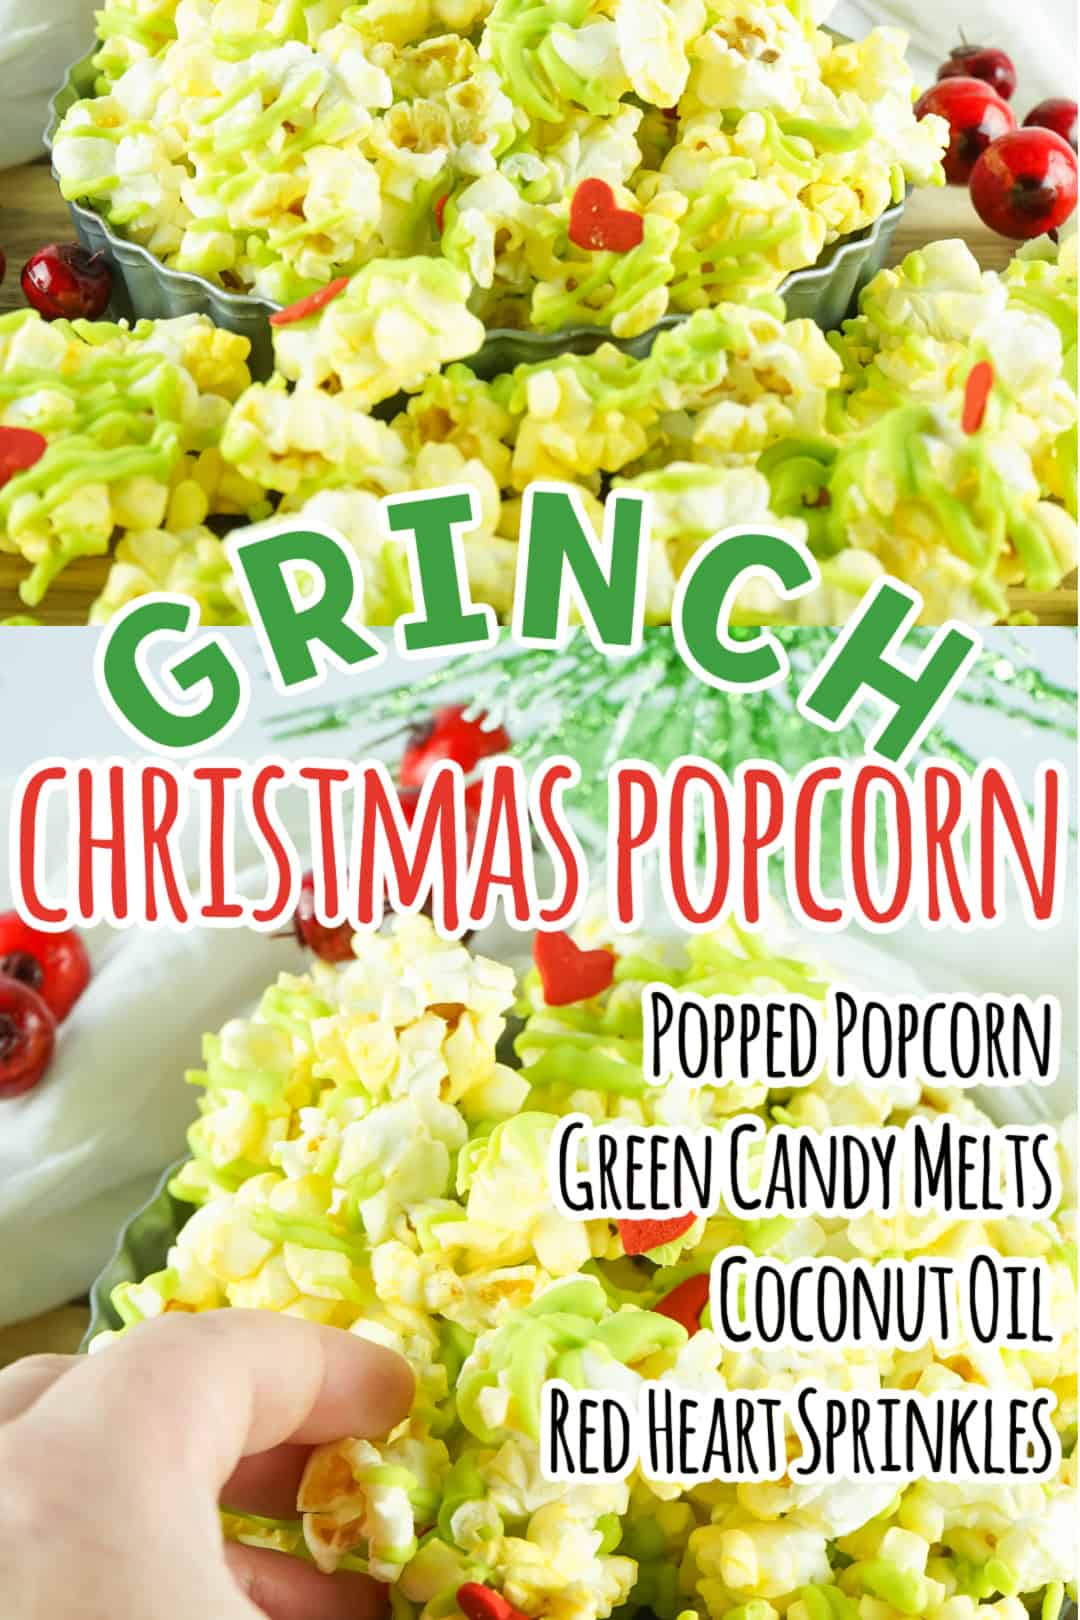 The Grinch Wearing Santa Hat Popcorn Maker Pops Kernels With Hot